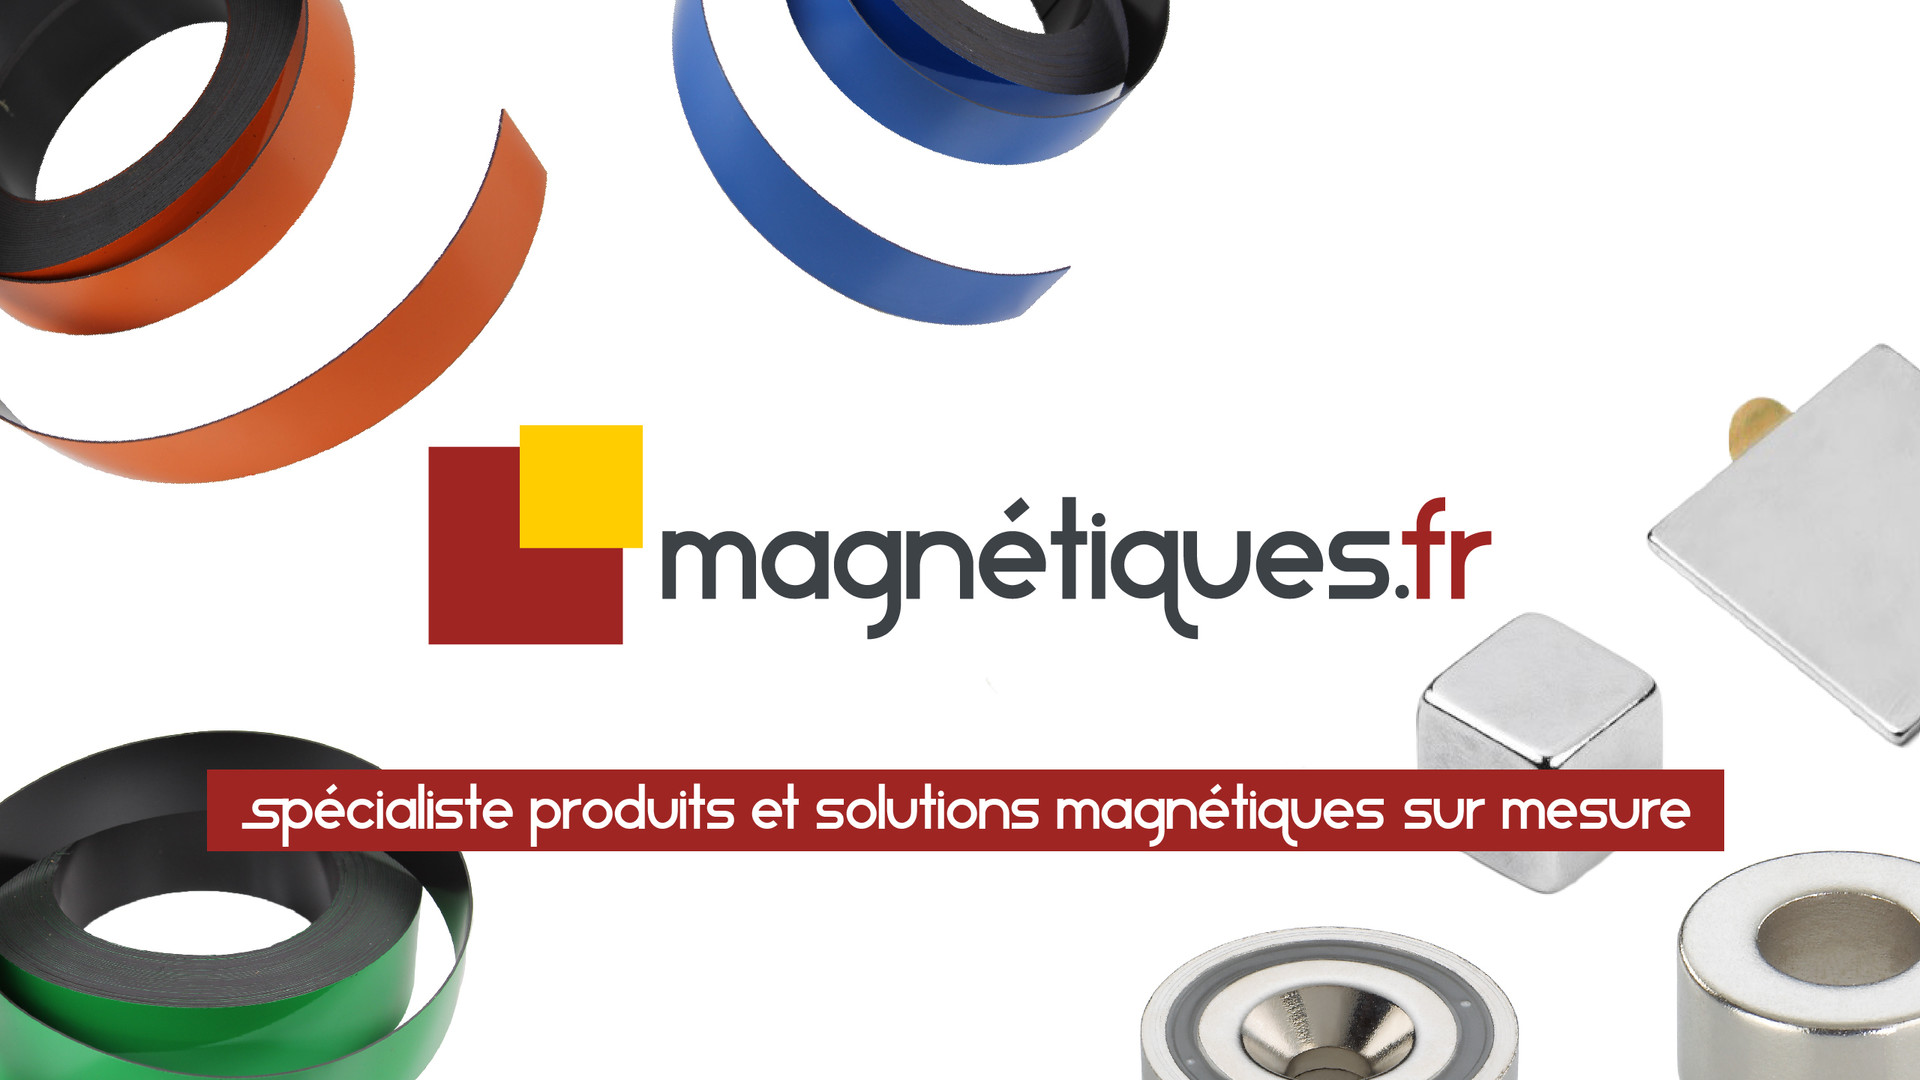 Boutique AAIS - magnetiques.fr - Grenoble Shopping